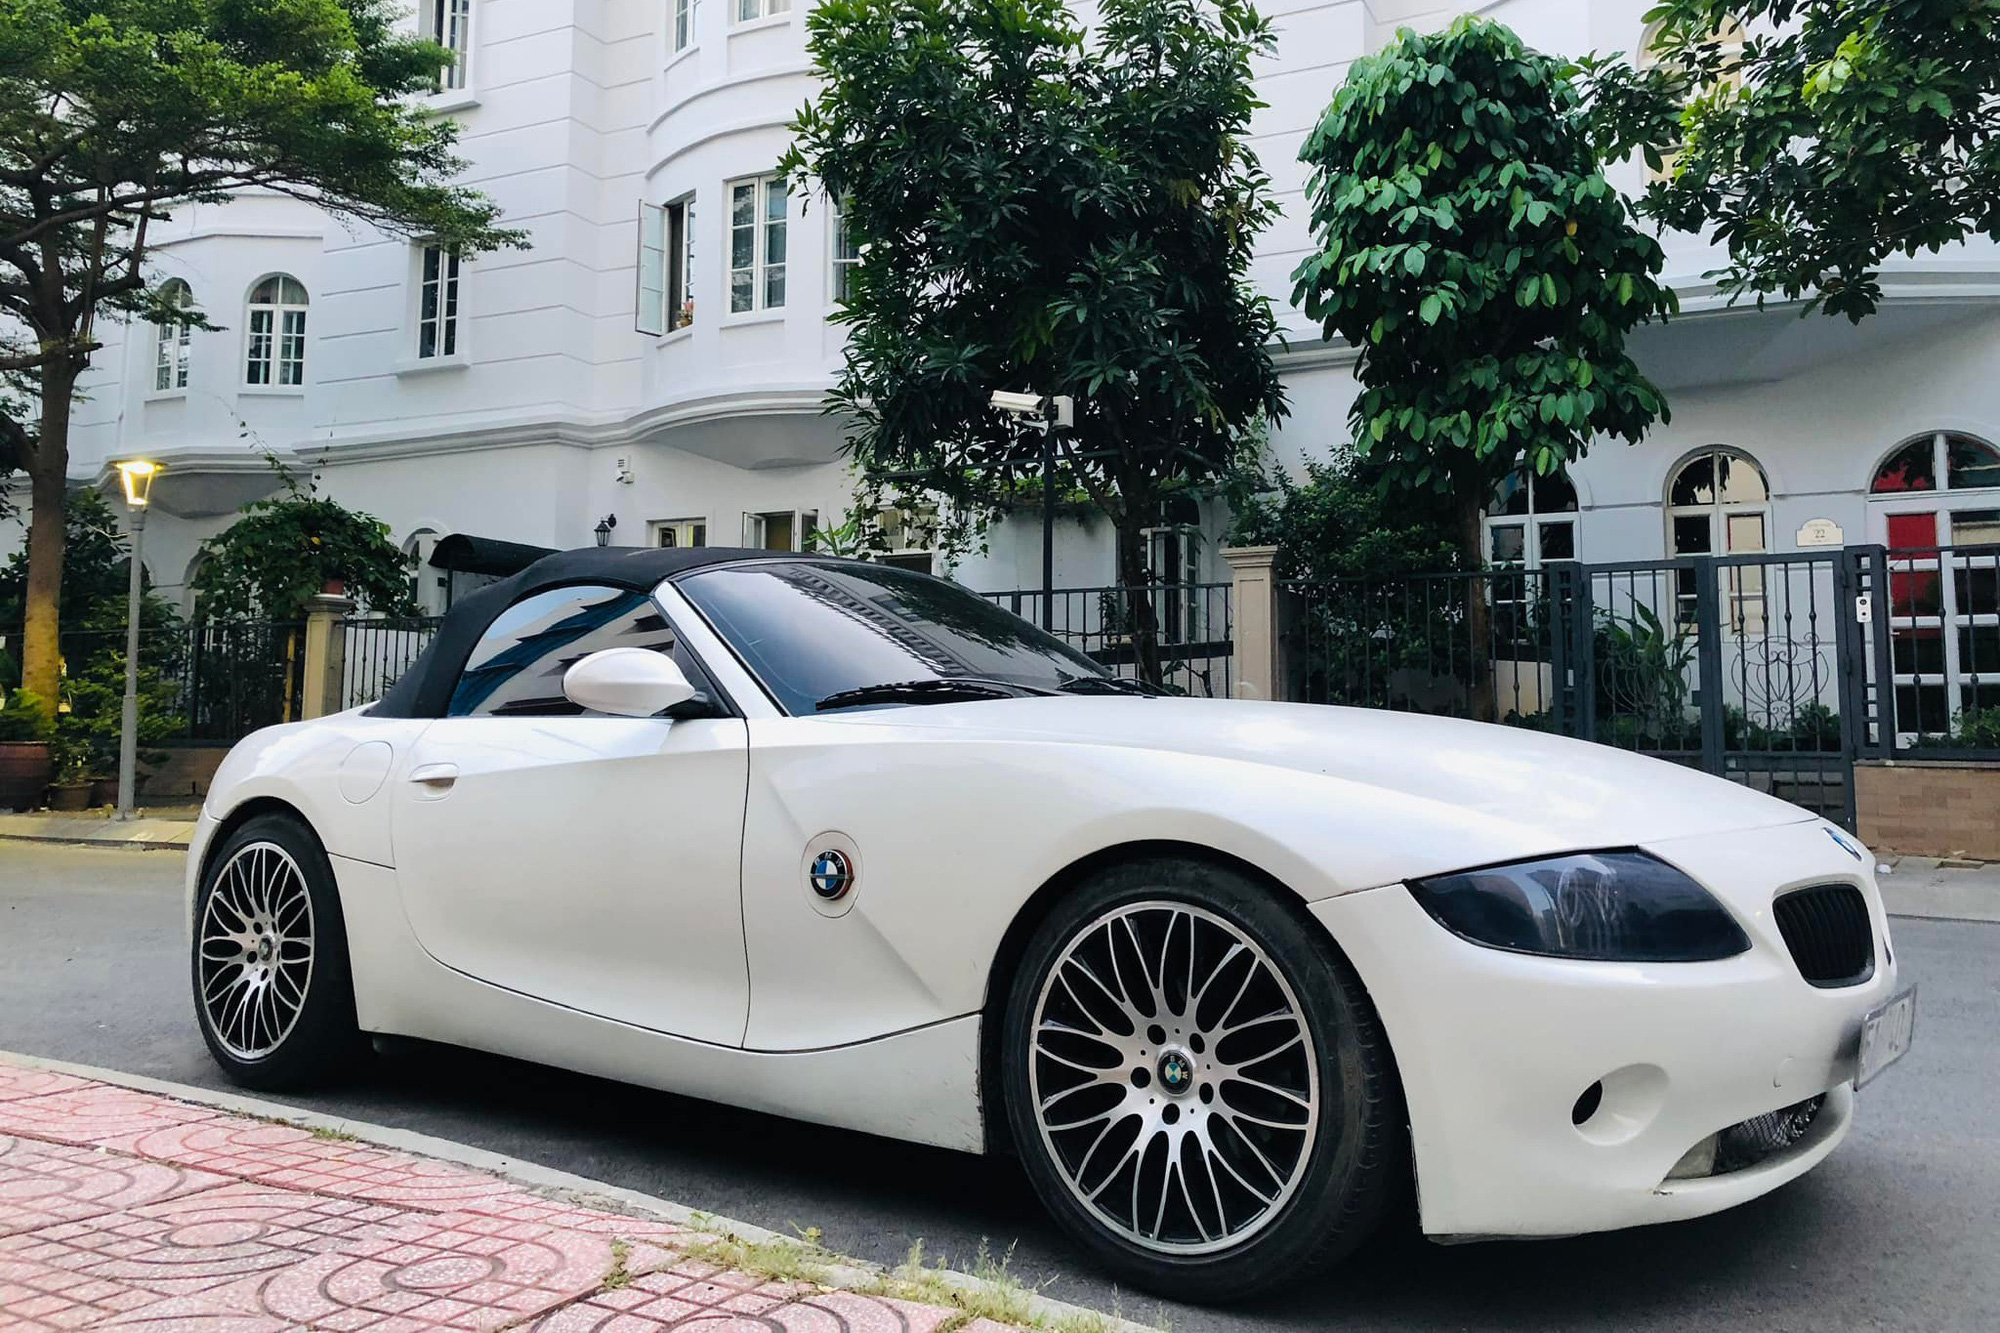 Sau gần 2 thập kỷ, BMW Z4 với ngoại hình như vừa 'đập hộp' được rao bán giá 650 triệu